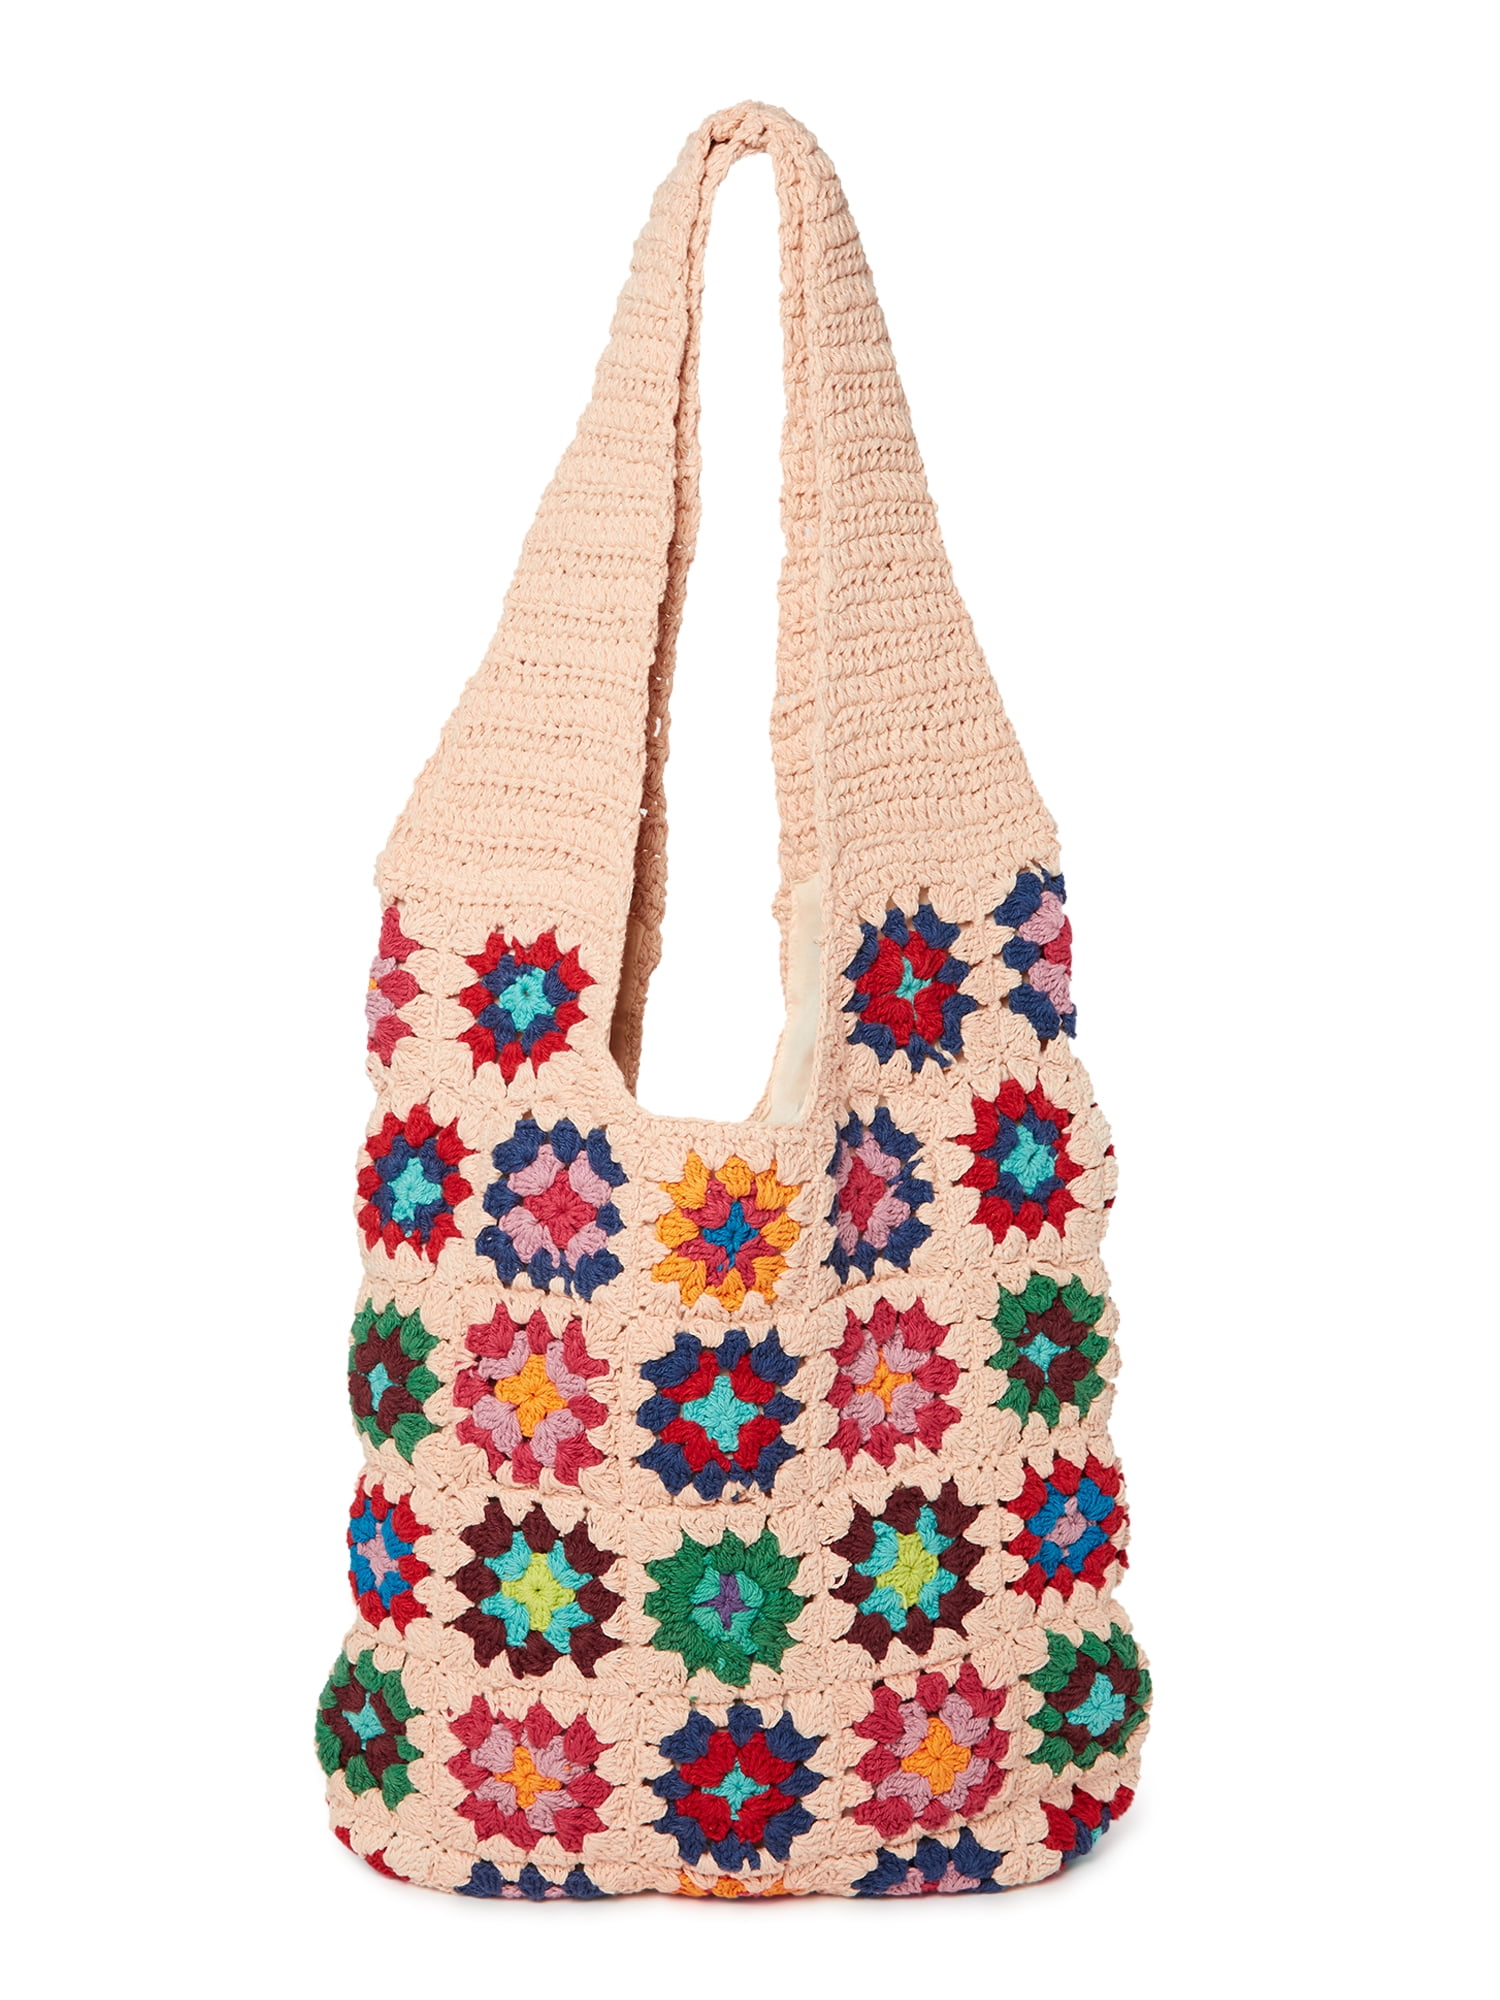 Crochet Souvenir Bag for my lovely musical members :